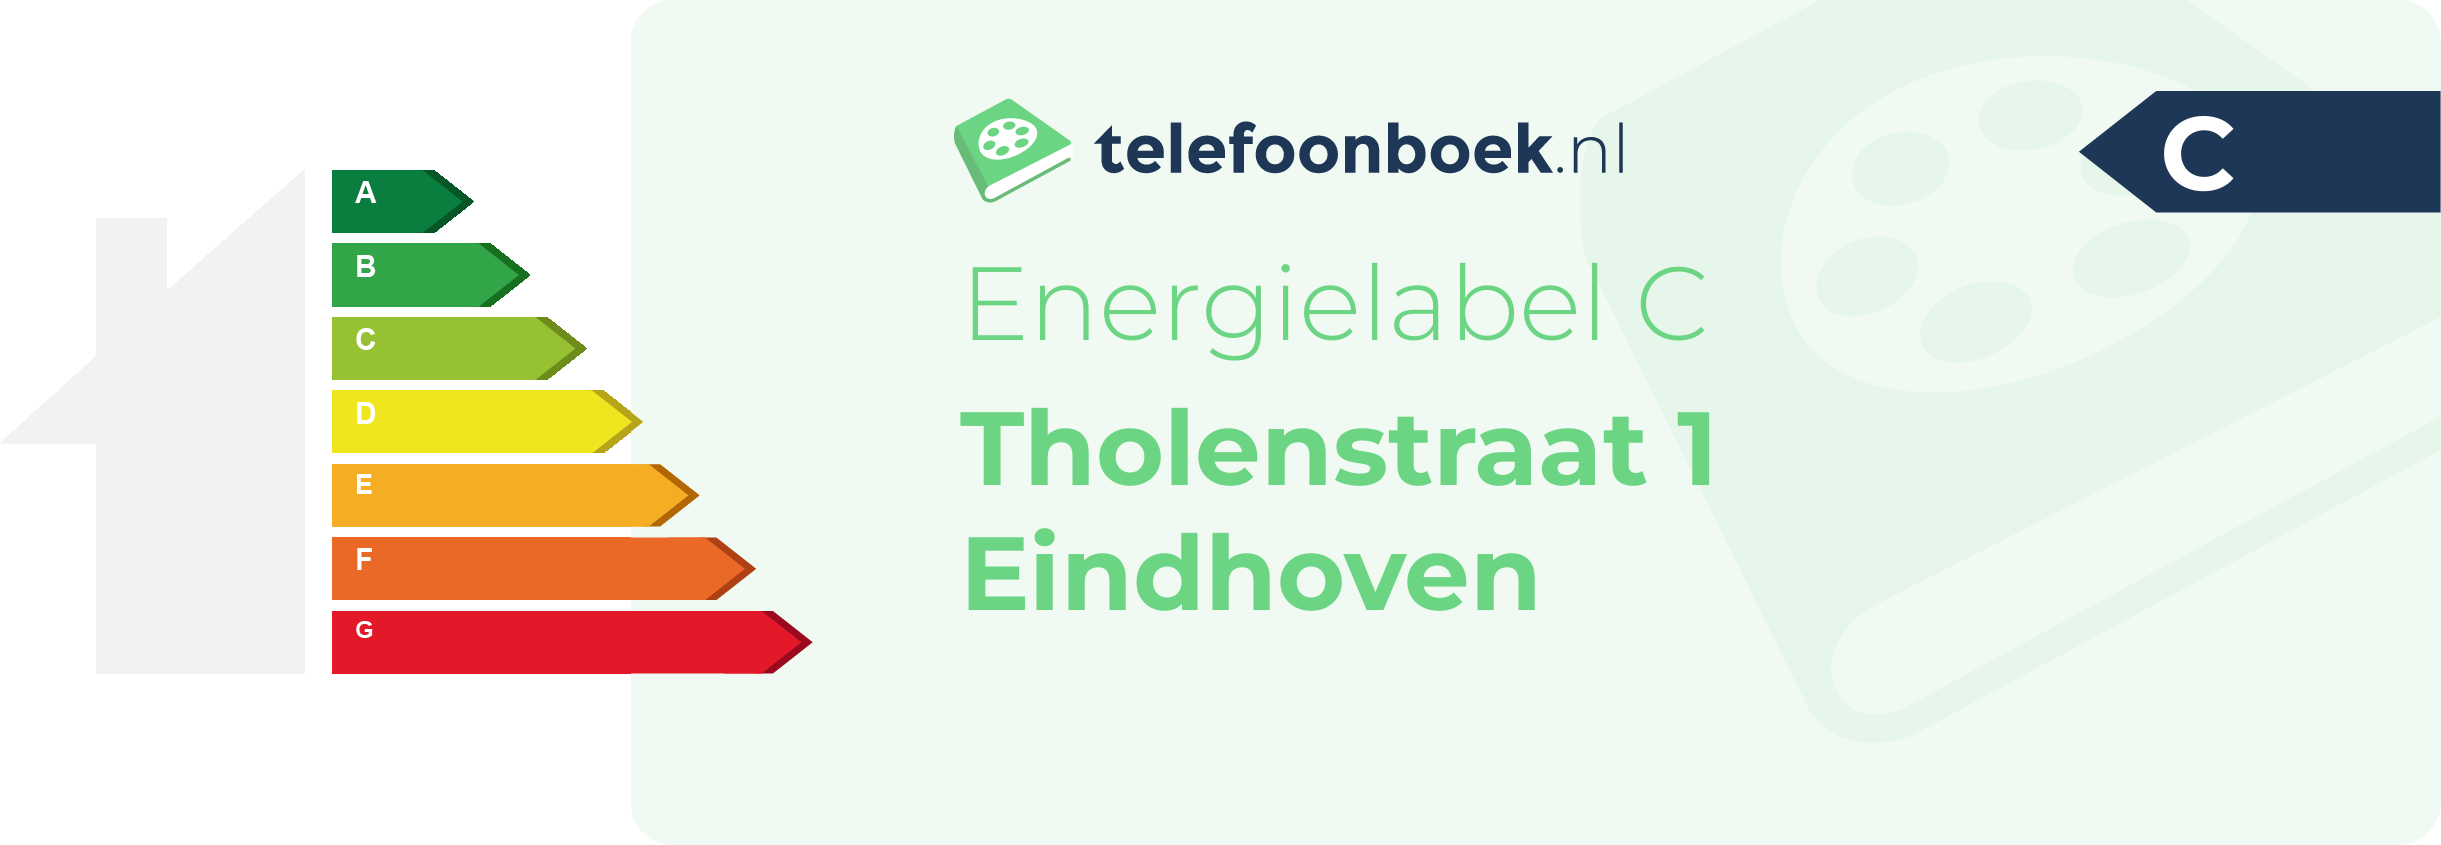 Energielabel Tholenstraat 1 Eindhoven